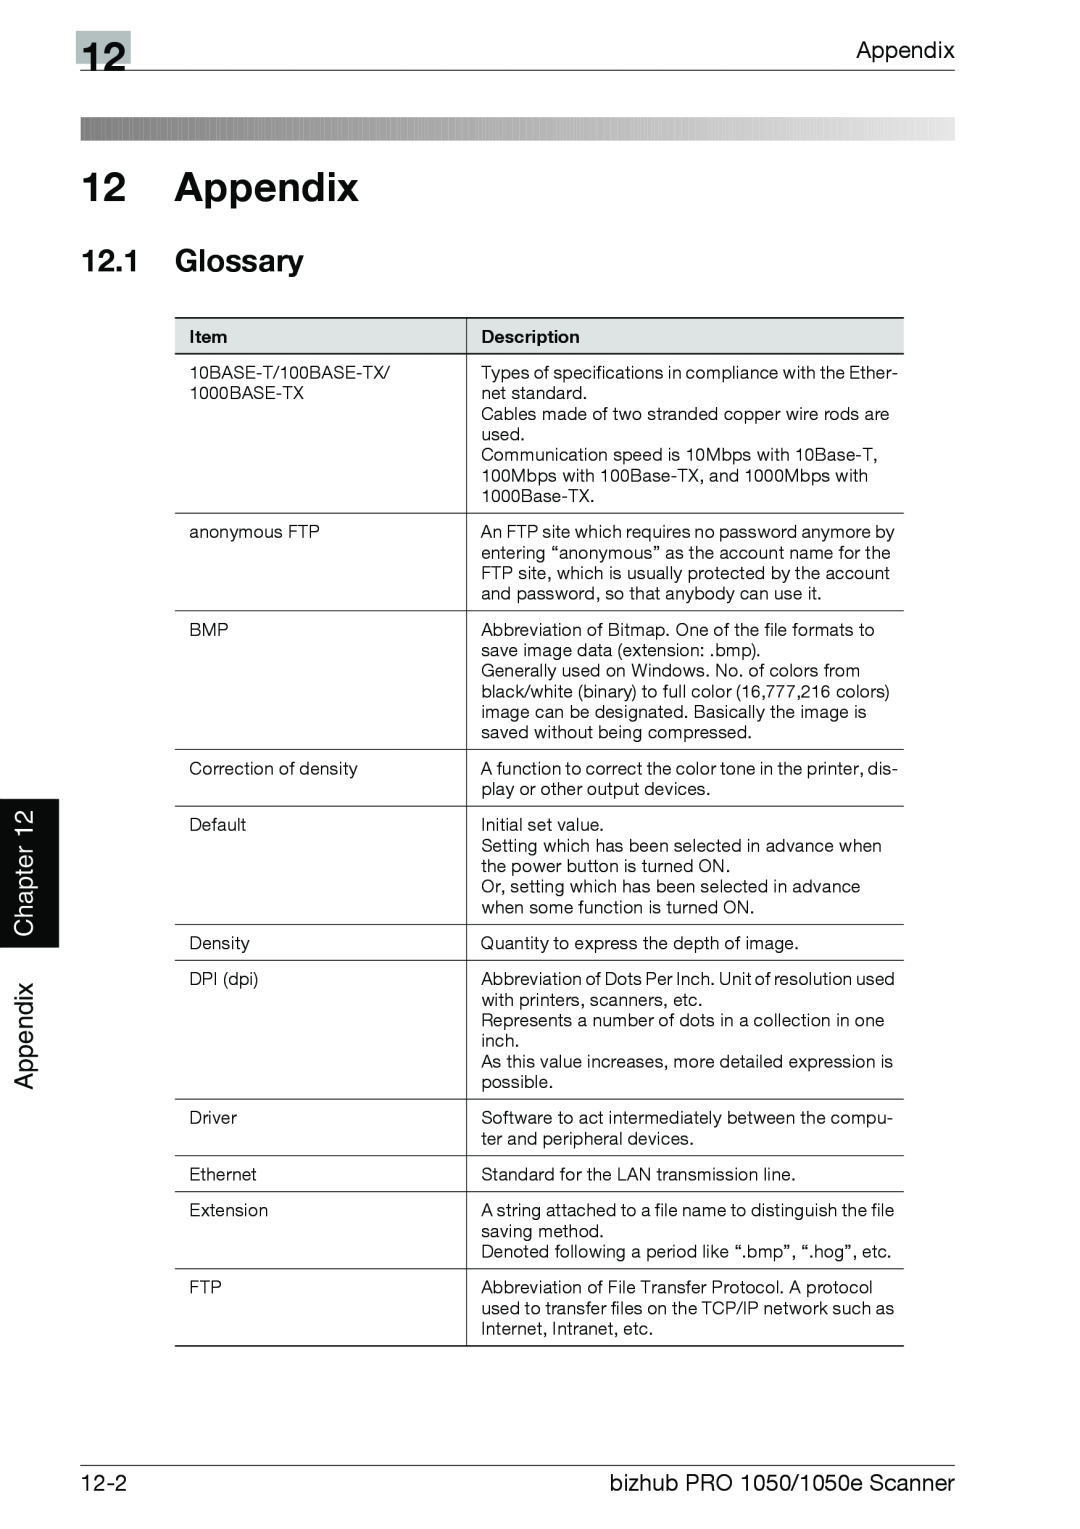 Konica Minolta 1050E appendix 12 12 Appendix, 12.1Glossary, 12-2, bizhub PRO 1050/1050e Scanner, Item, Description 